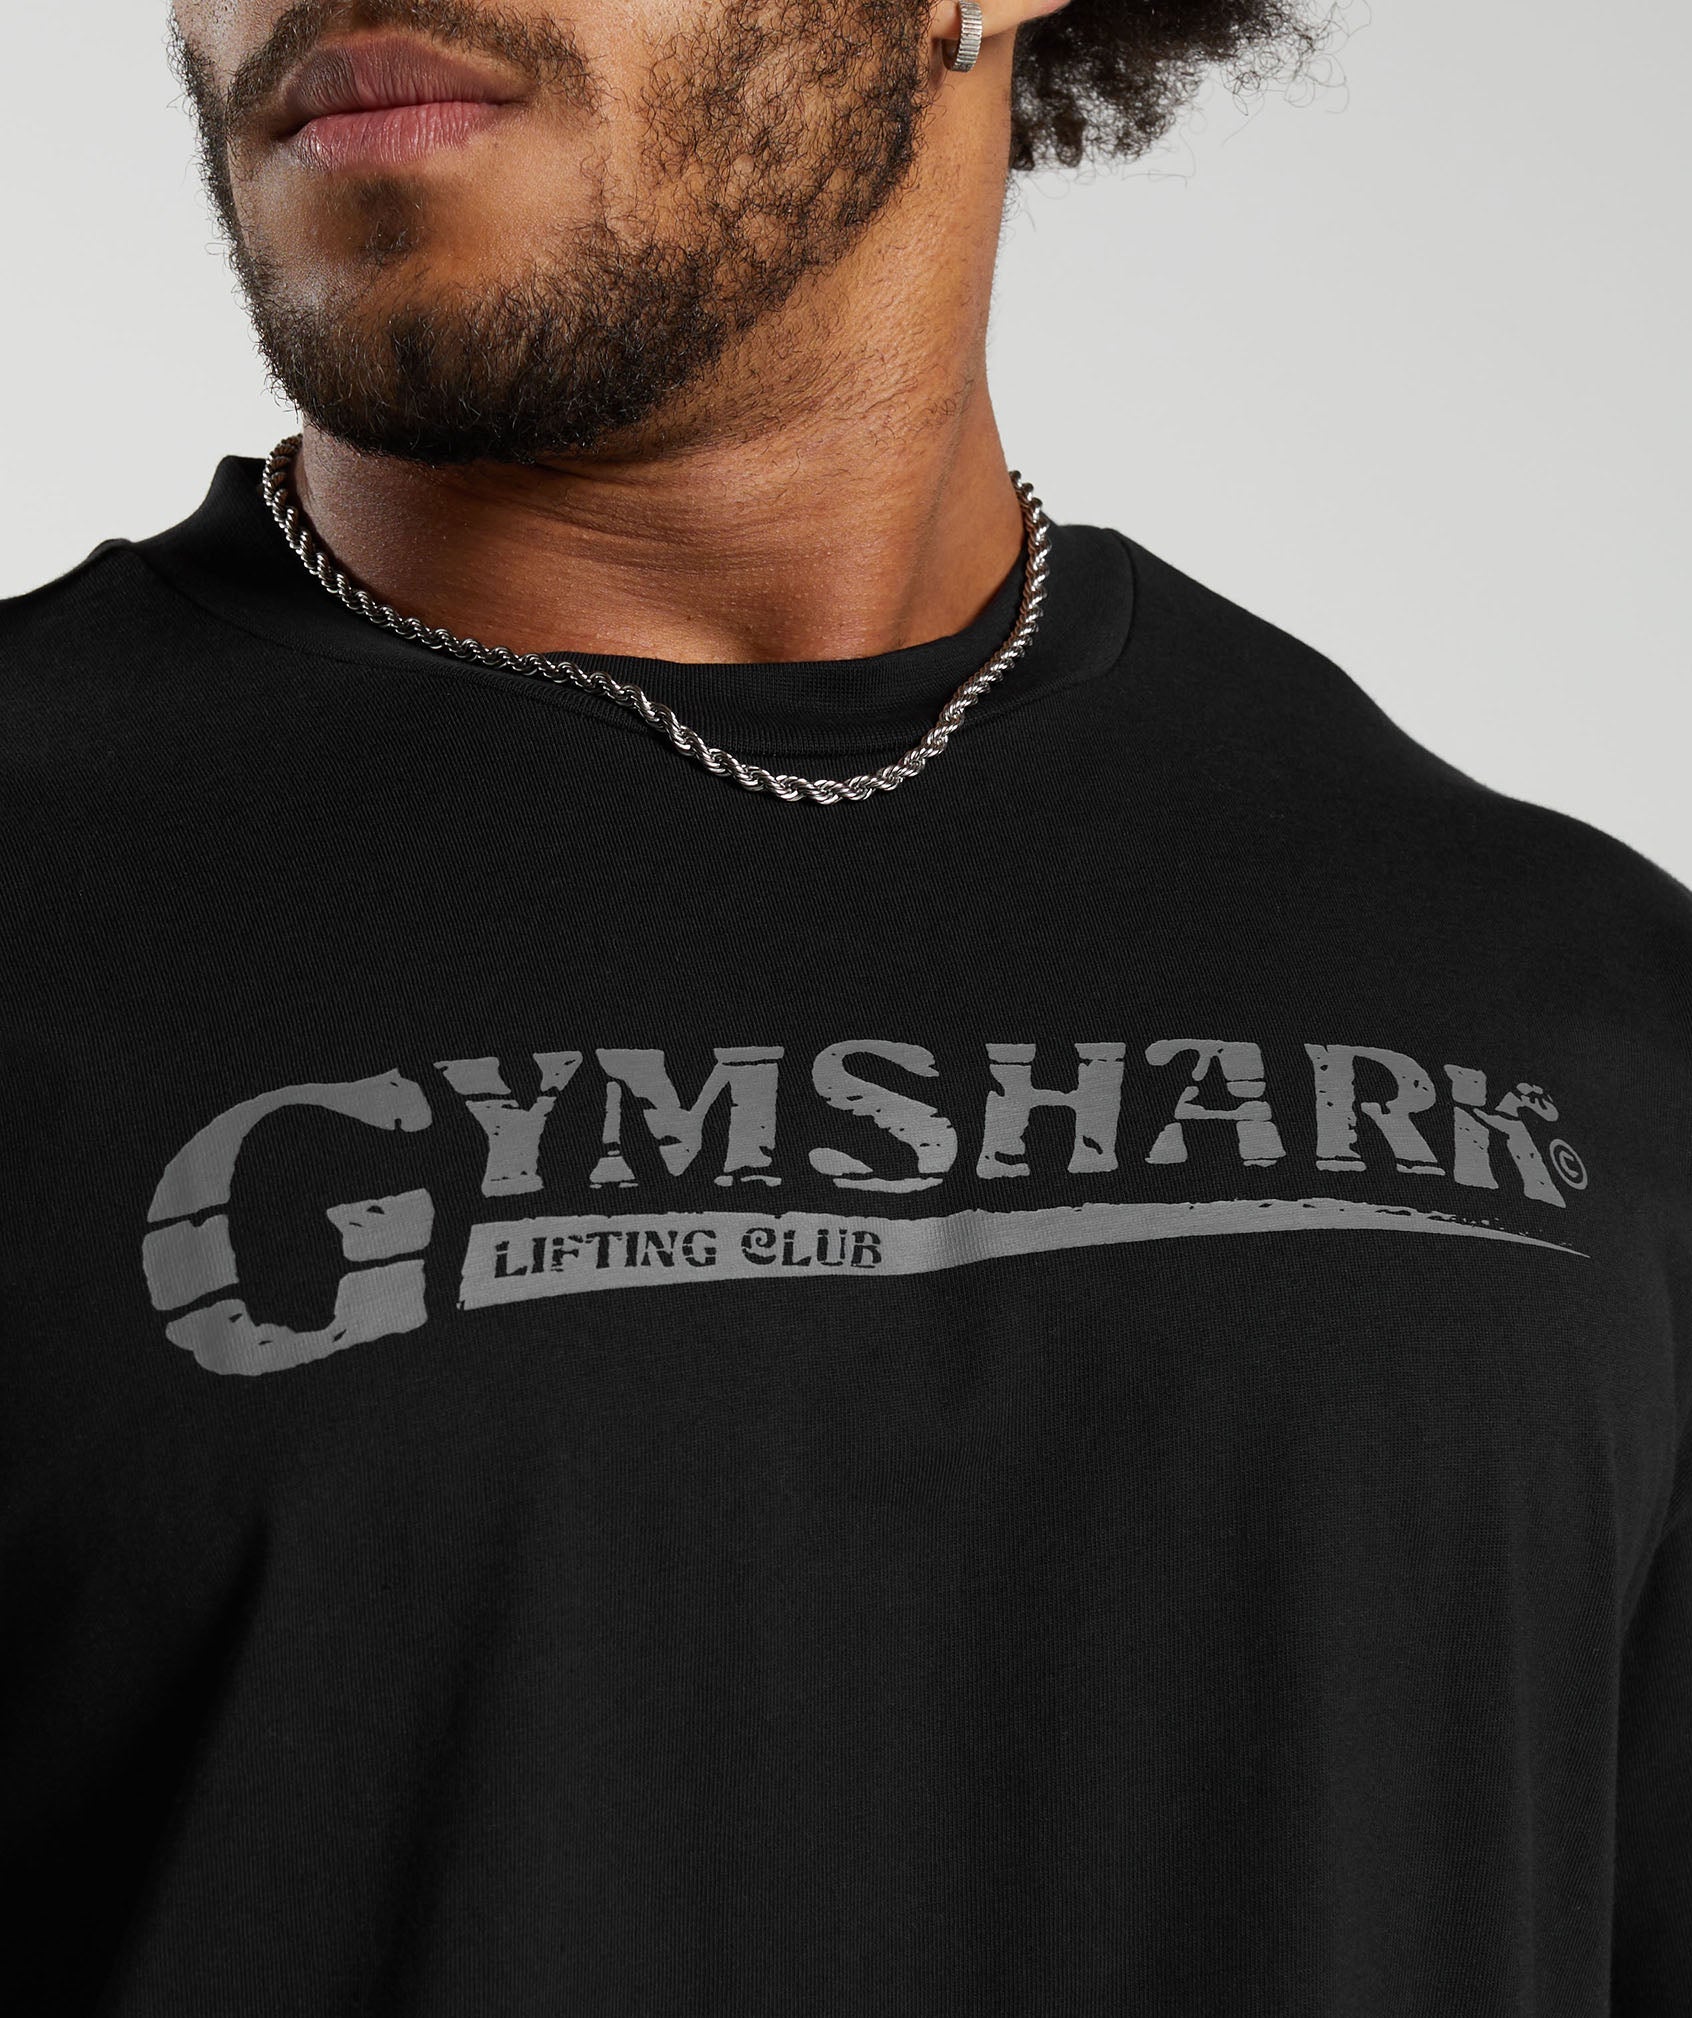 Gymshark Lifting Club T-Shirt - Black